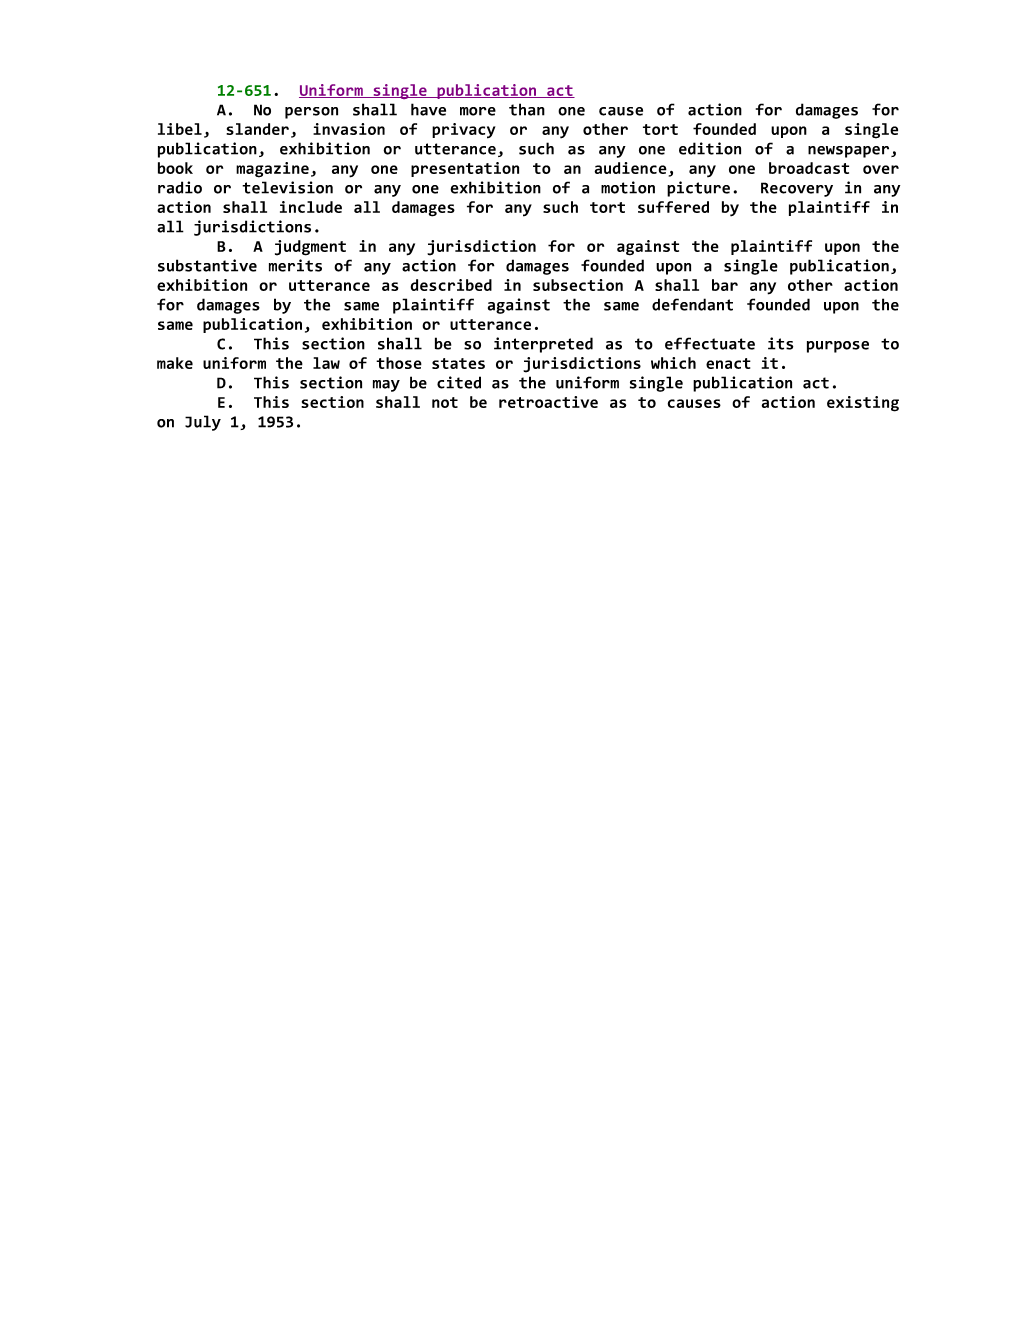 12-651; Uniform Single Publication Act